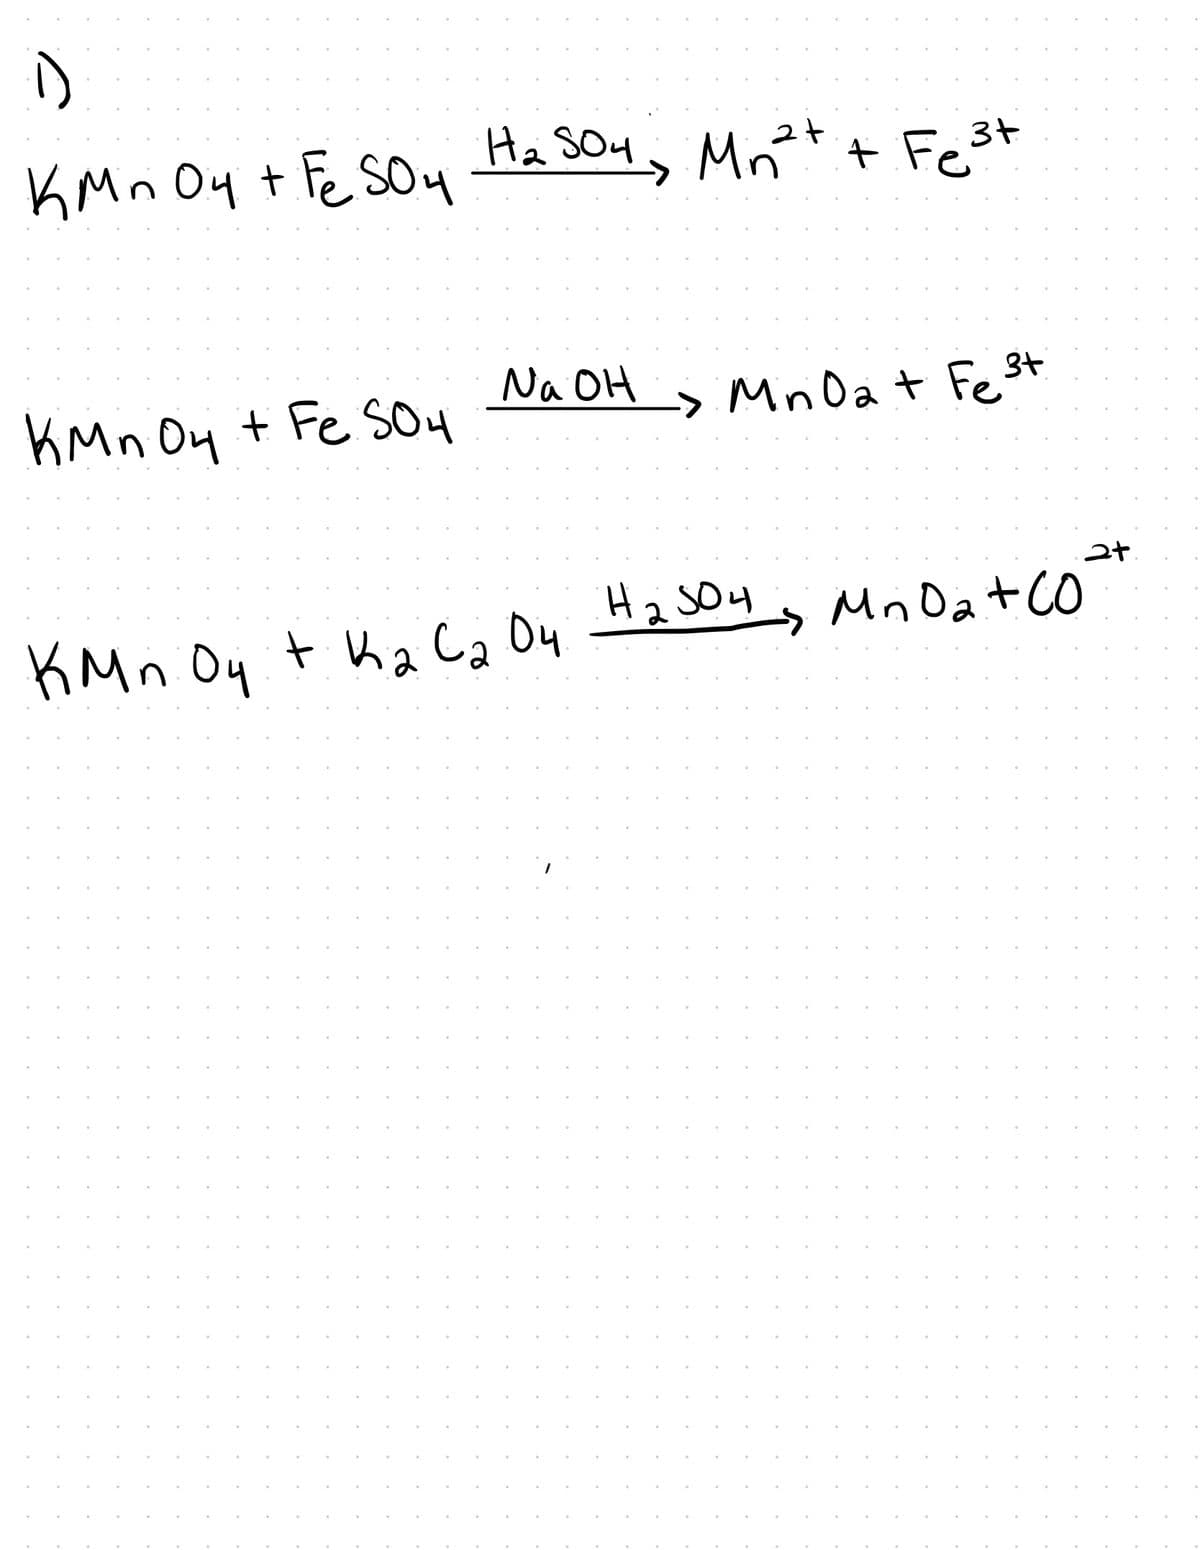 (1)
KMnO4 + FeSO4 H₂ SO4, Mn²+ + Fe ³3+
На бол, Mnet
2+
KMn 04 + Fe S04
Na OH
Mini Dat Fe3+
2+
MnO₂ +
а
кмп Оч ткаса он на зон, Mnoat co